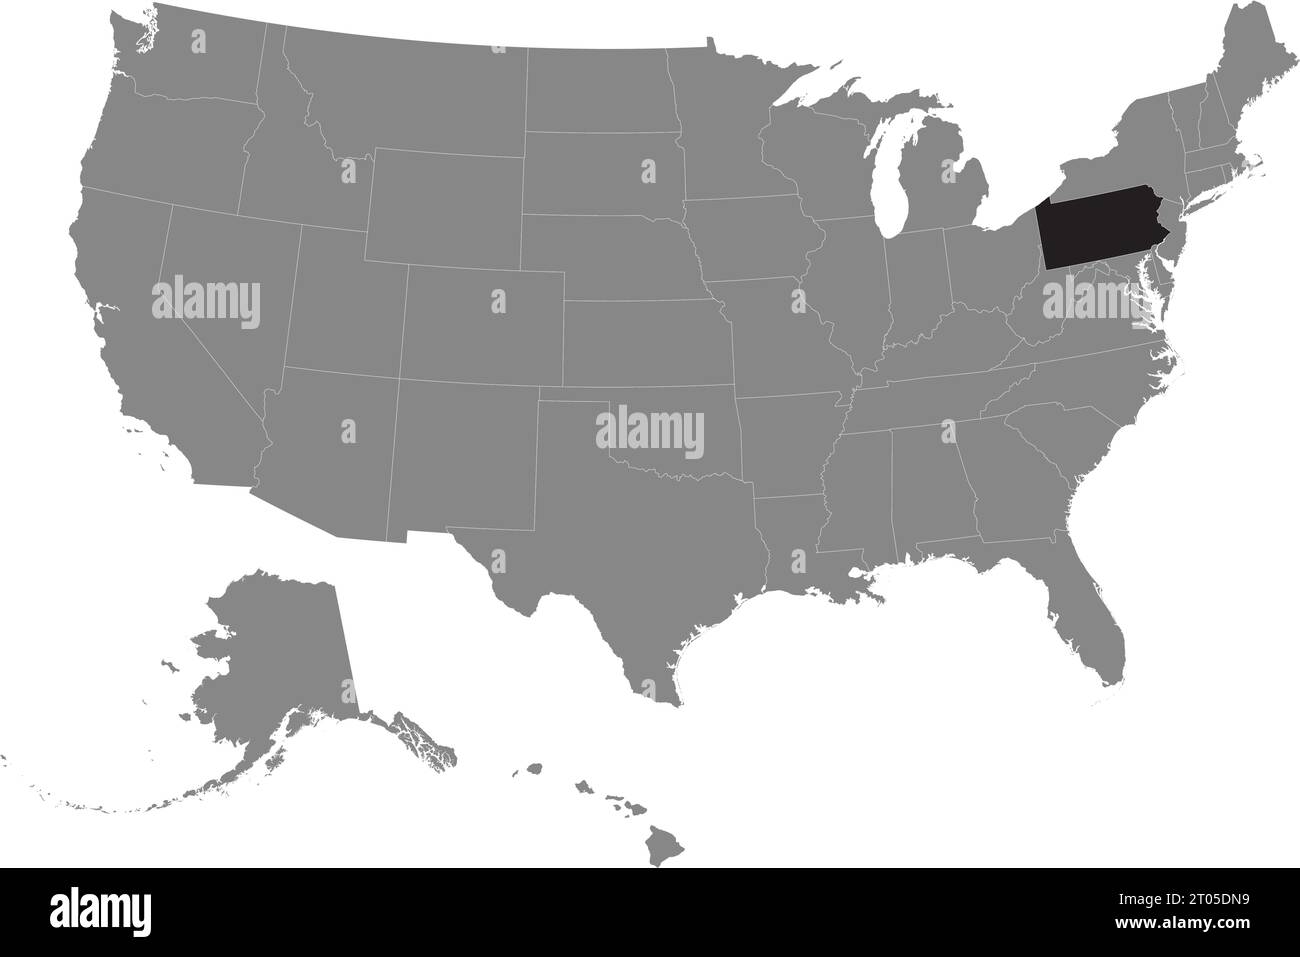 Schwarze CMYK-Bundeskarte von PENNSYLVANIA in detaillierter grauer, leerer politischer Karte der Vereinigten Staaten von Amerika auf transparentem Hintergrund Stock Vektor